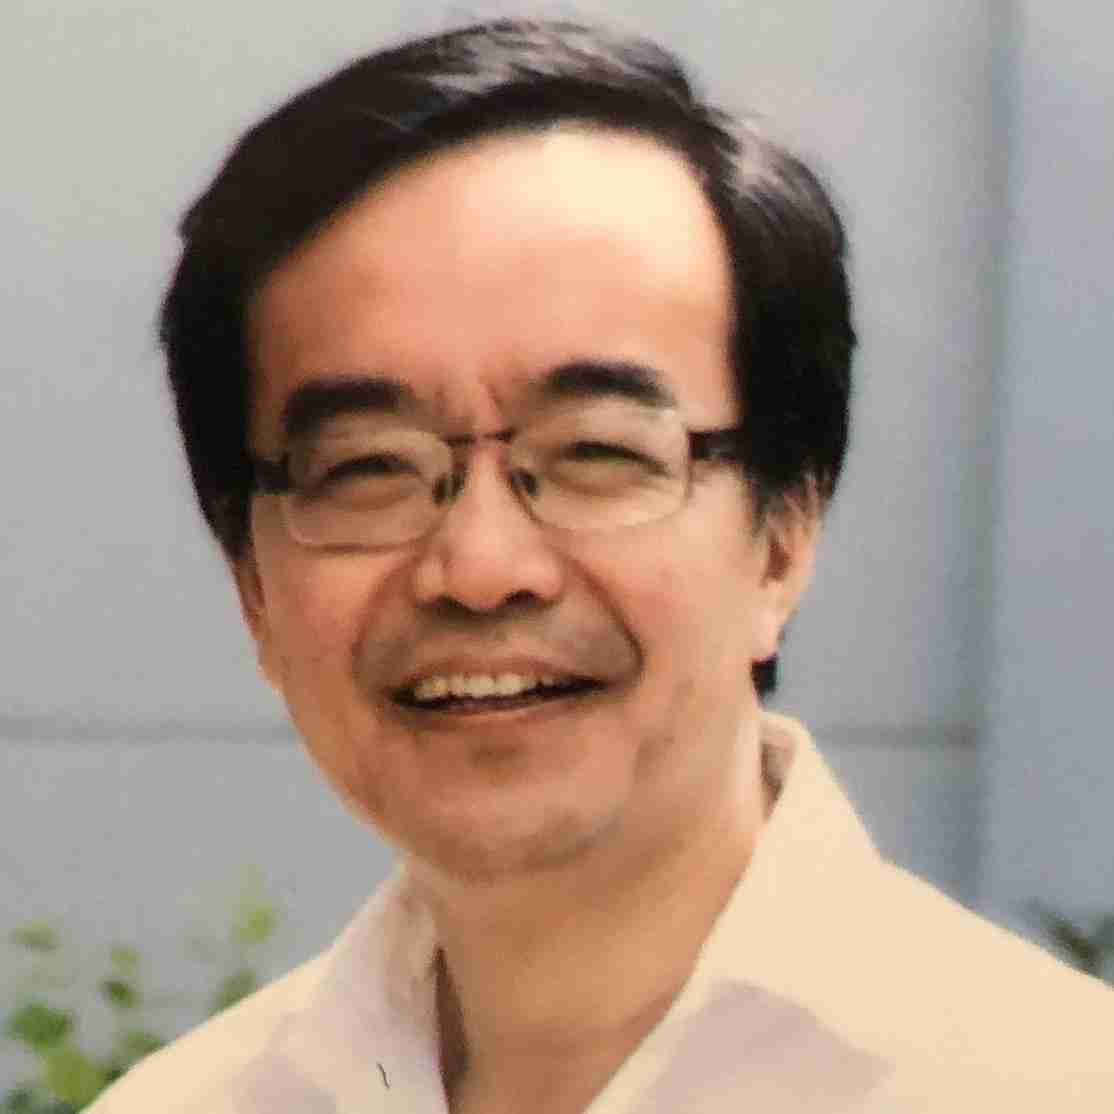 Profile image of Professor WEIYA ZHANG